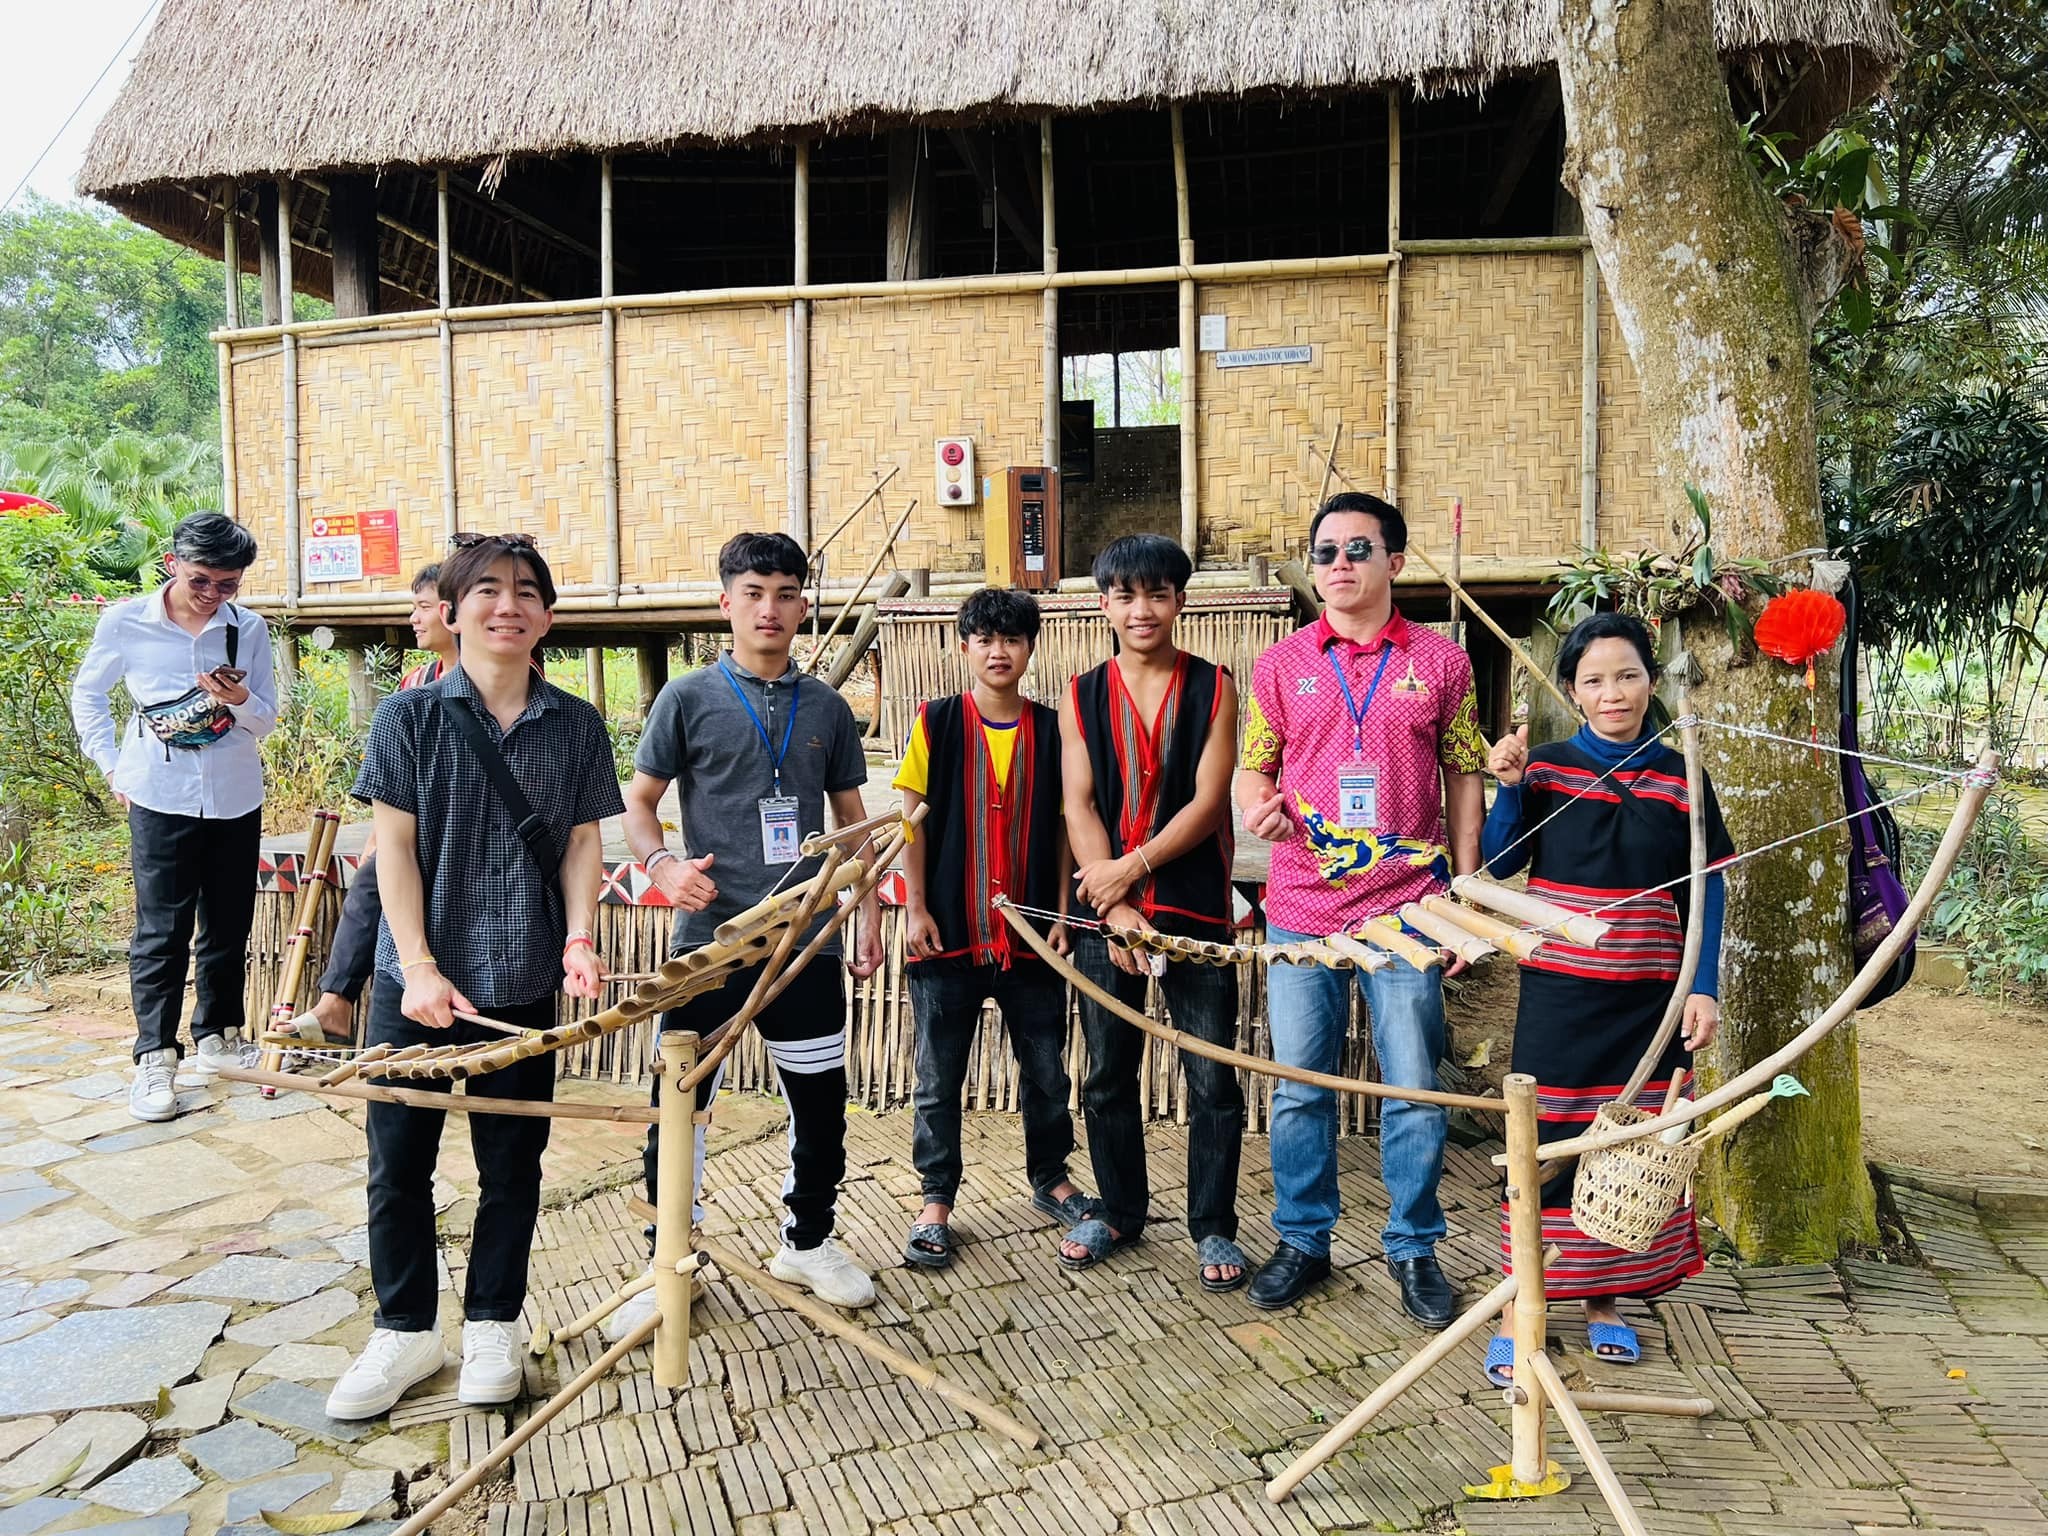 Hơn 300 lưu học sinh Lào, Campuchia trải nghiệm văn hóa các dân tộc Việt Nam